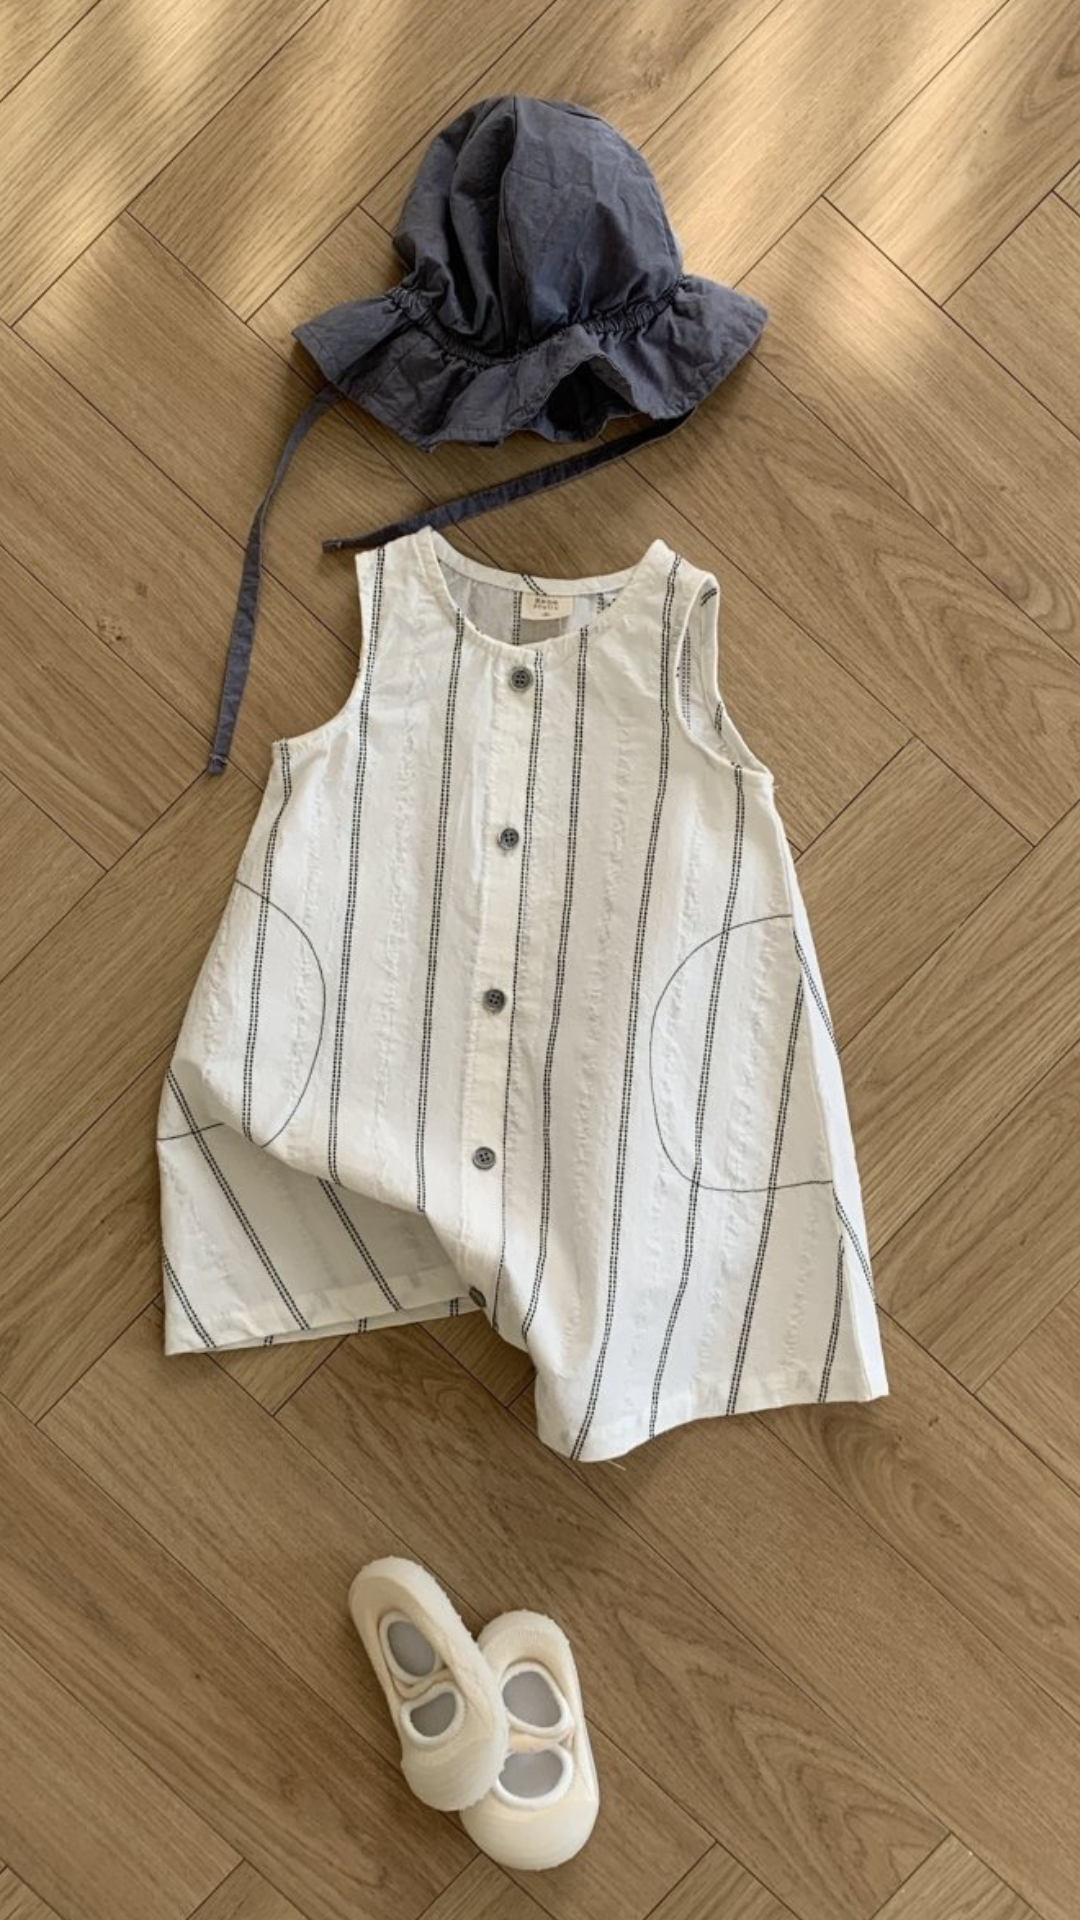 Ein auf einem Holzboden ausgebreitetes Kinderoutfit, bestehend aus einem gestreiften ärmellosen Oberteil mit Knopfleiste, einem Schlapphut aus Blau und einem einzelnen weißen Schuh von Bebe Holics Daisy ST Body Suit.